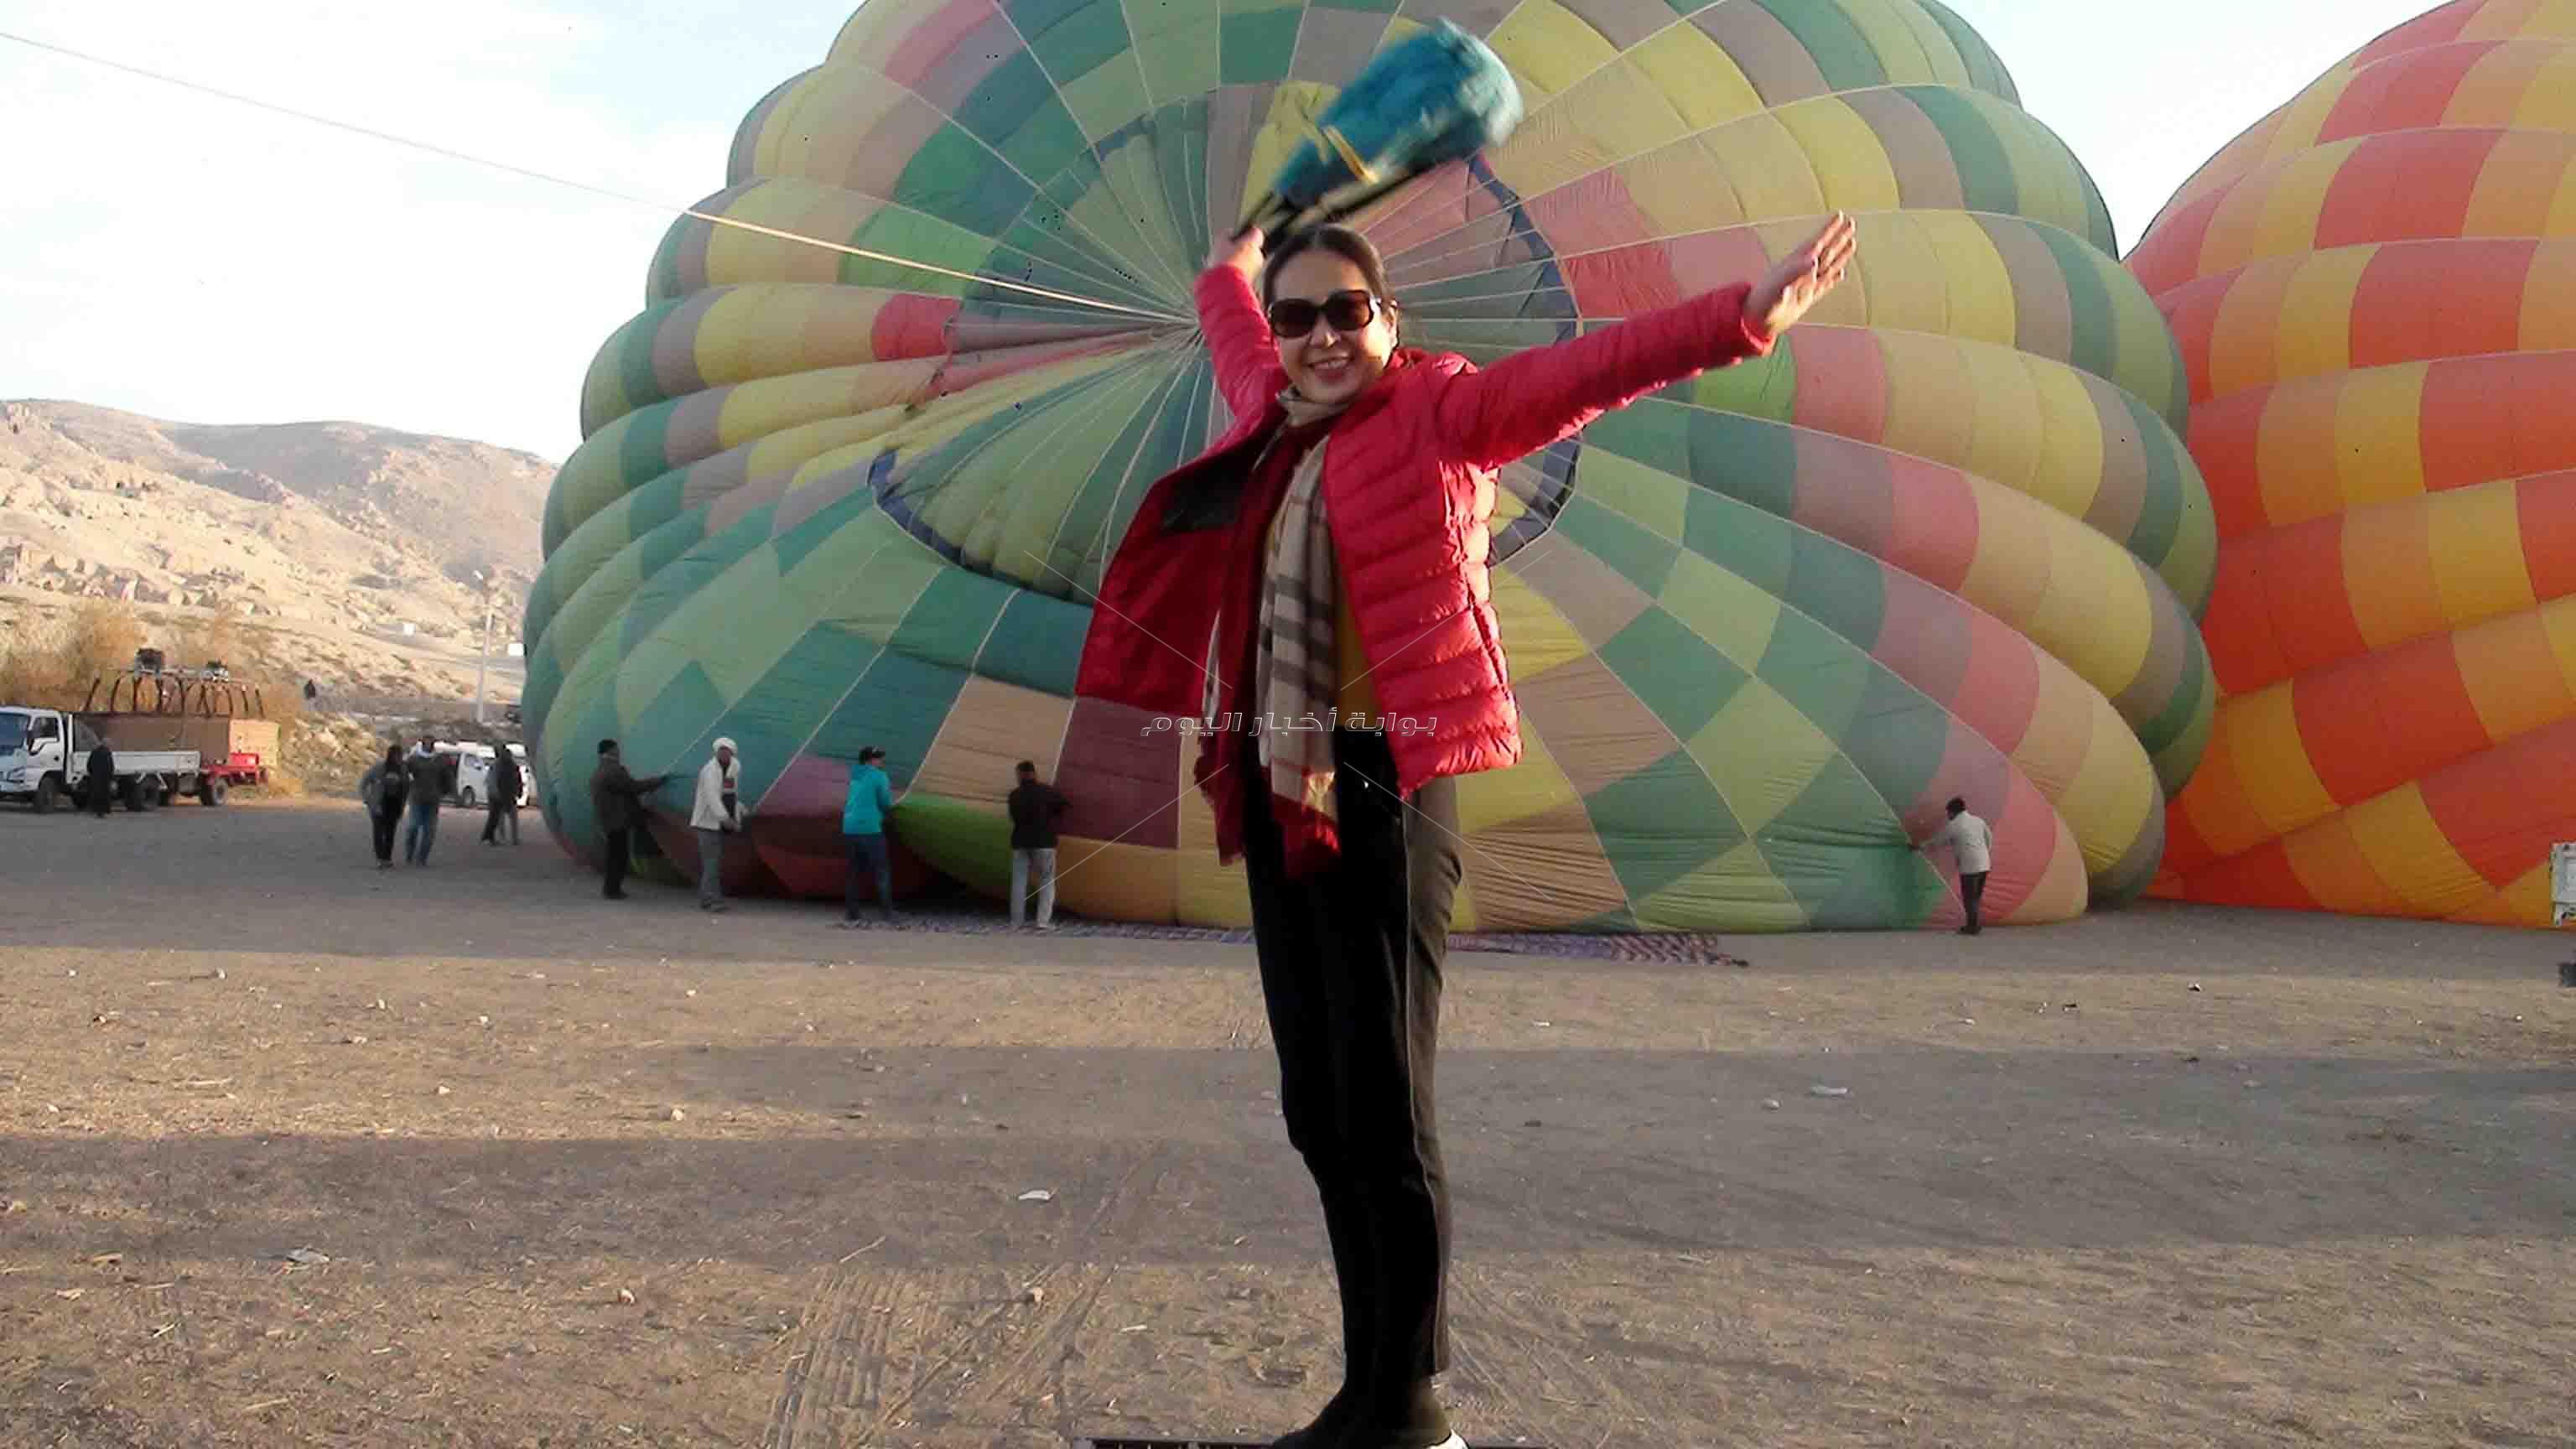 الأقصر تتفرد بين كل المقاصد السياحية المصرية بوجود البالون الطائر فى سمائها